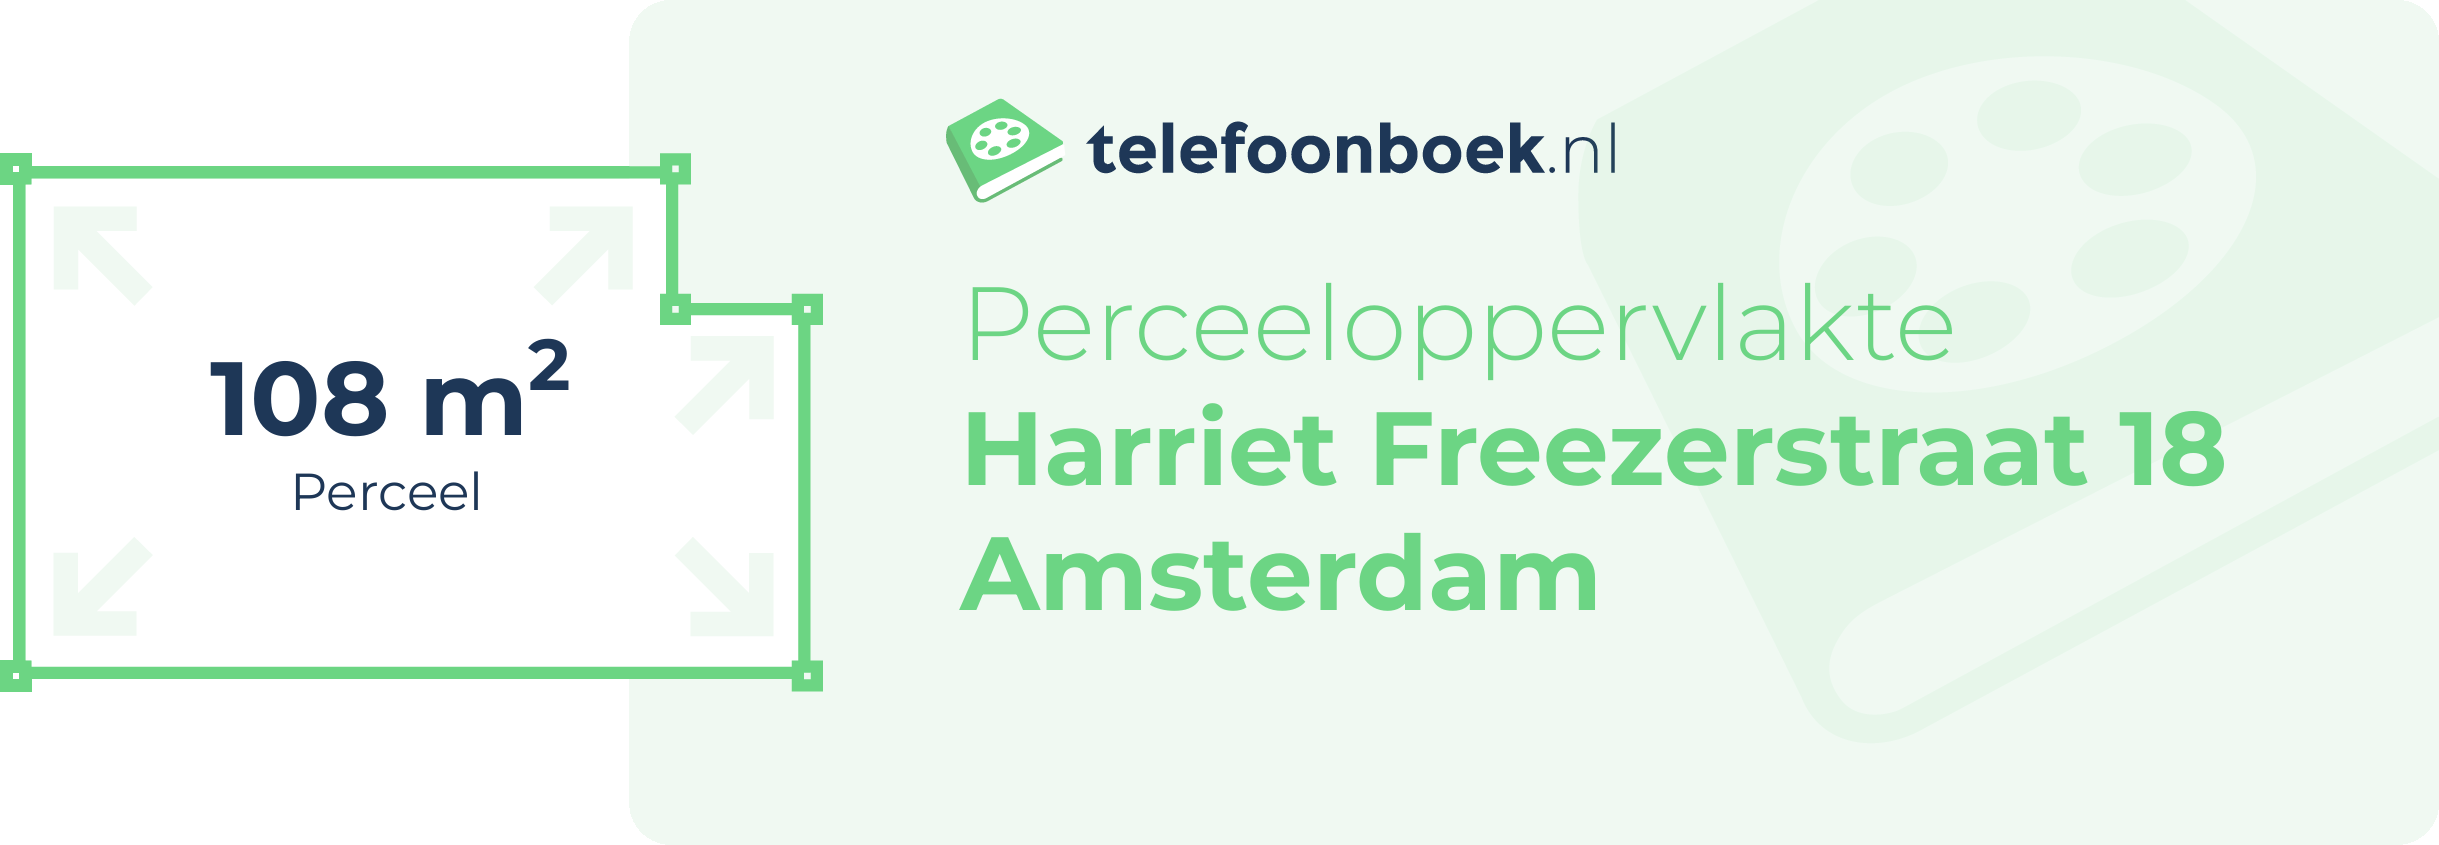 Perceeloppervlakte Harriet Freezerstraat 18 Amsterdam